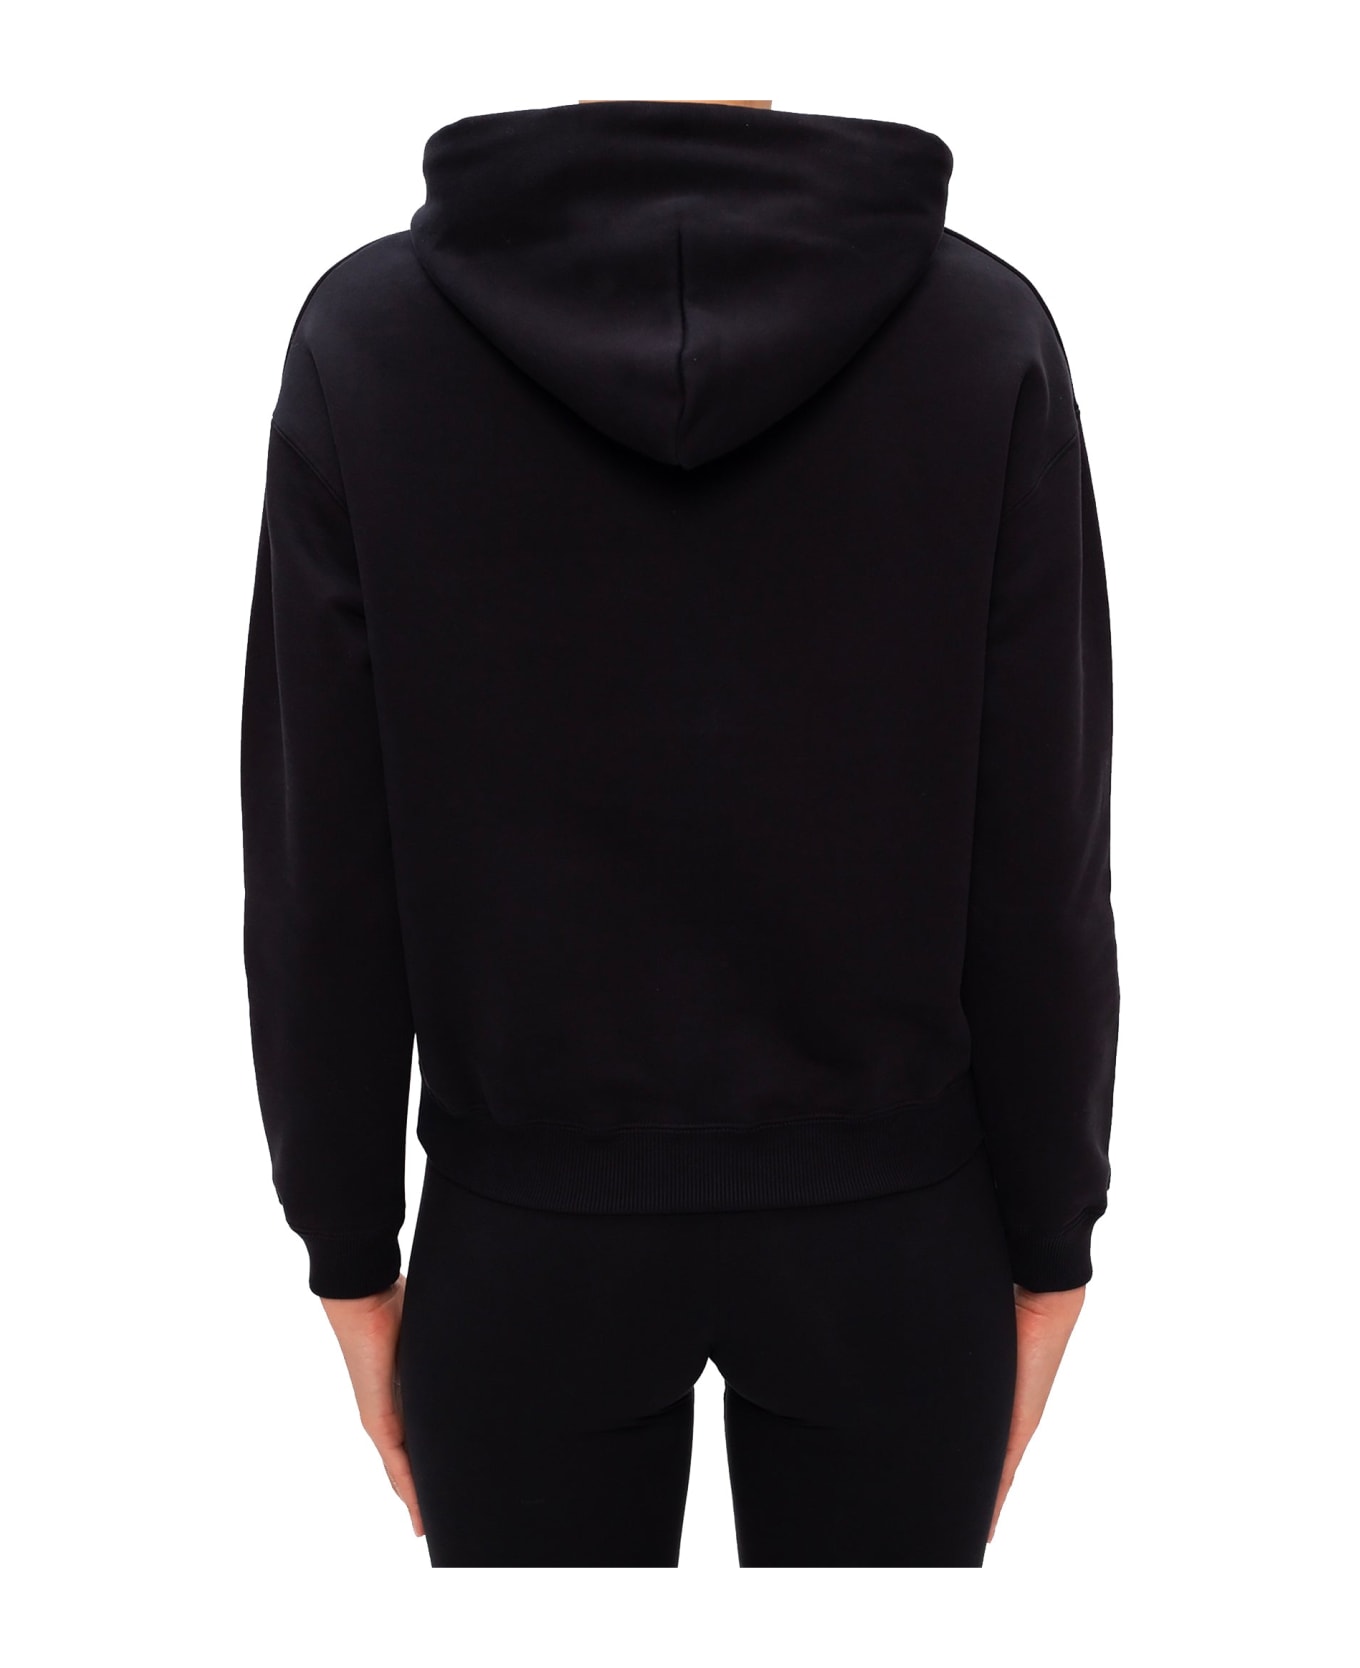 Balenciaga Logo Hooded Sweatshirt - Black